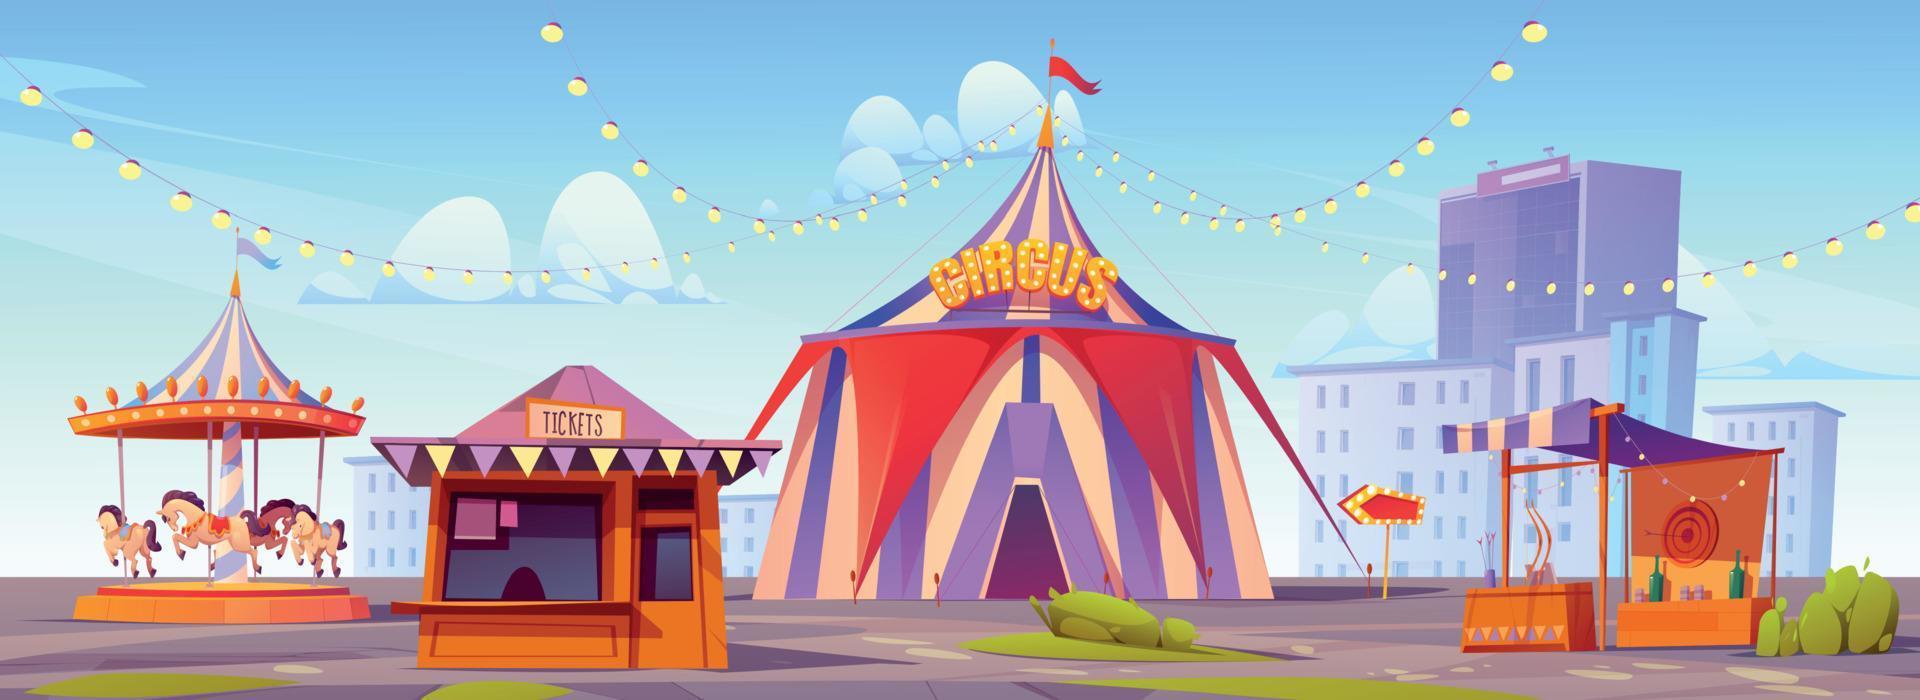 carnaval Diversão justo, diversão parque com circo barraca vetor